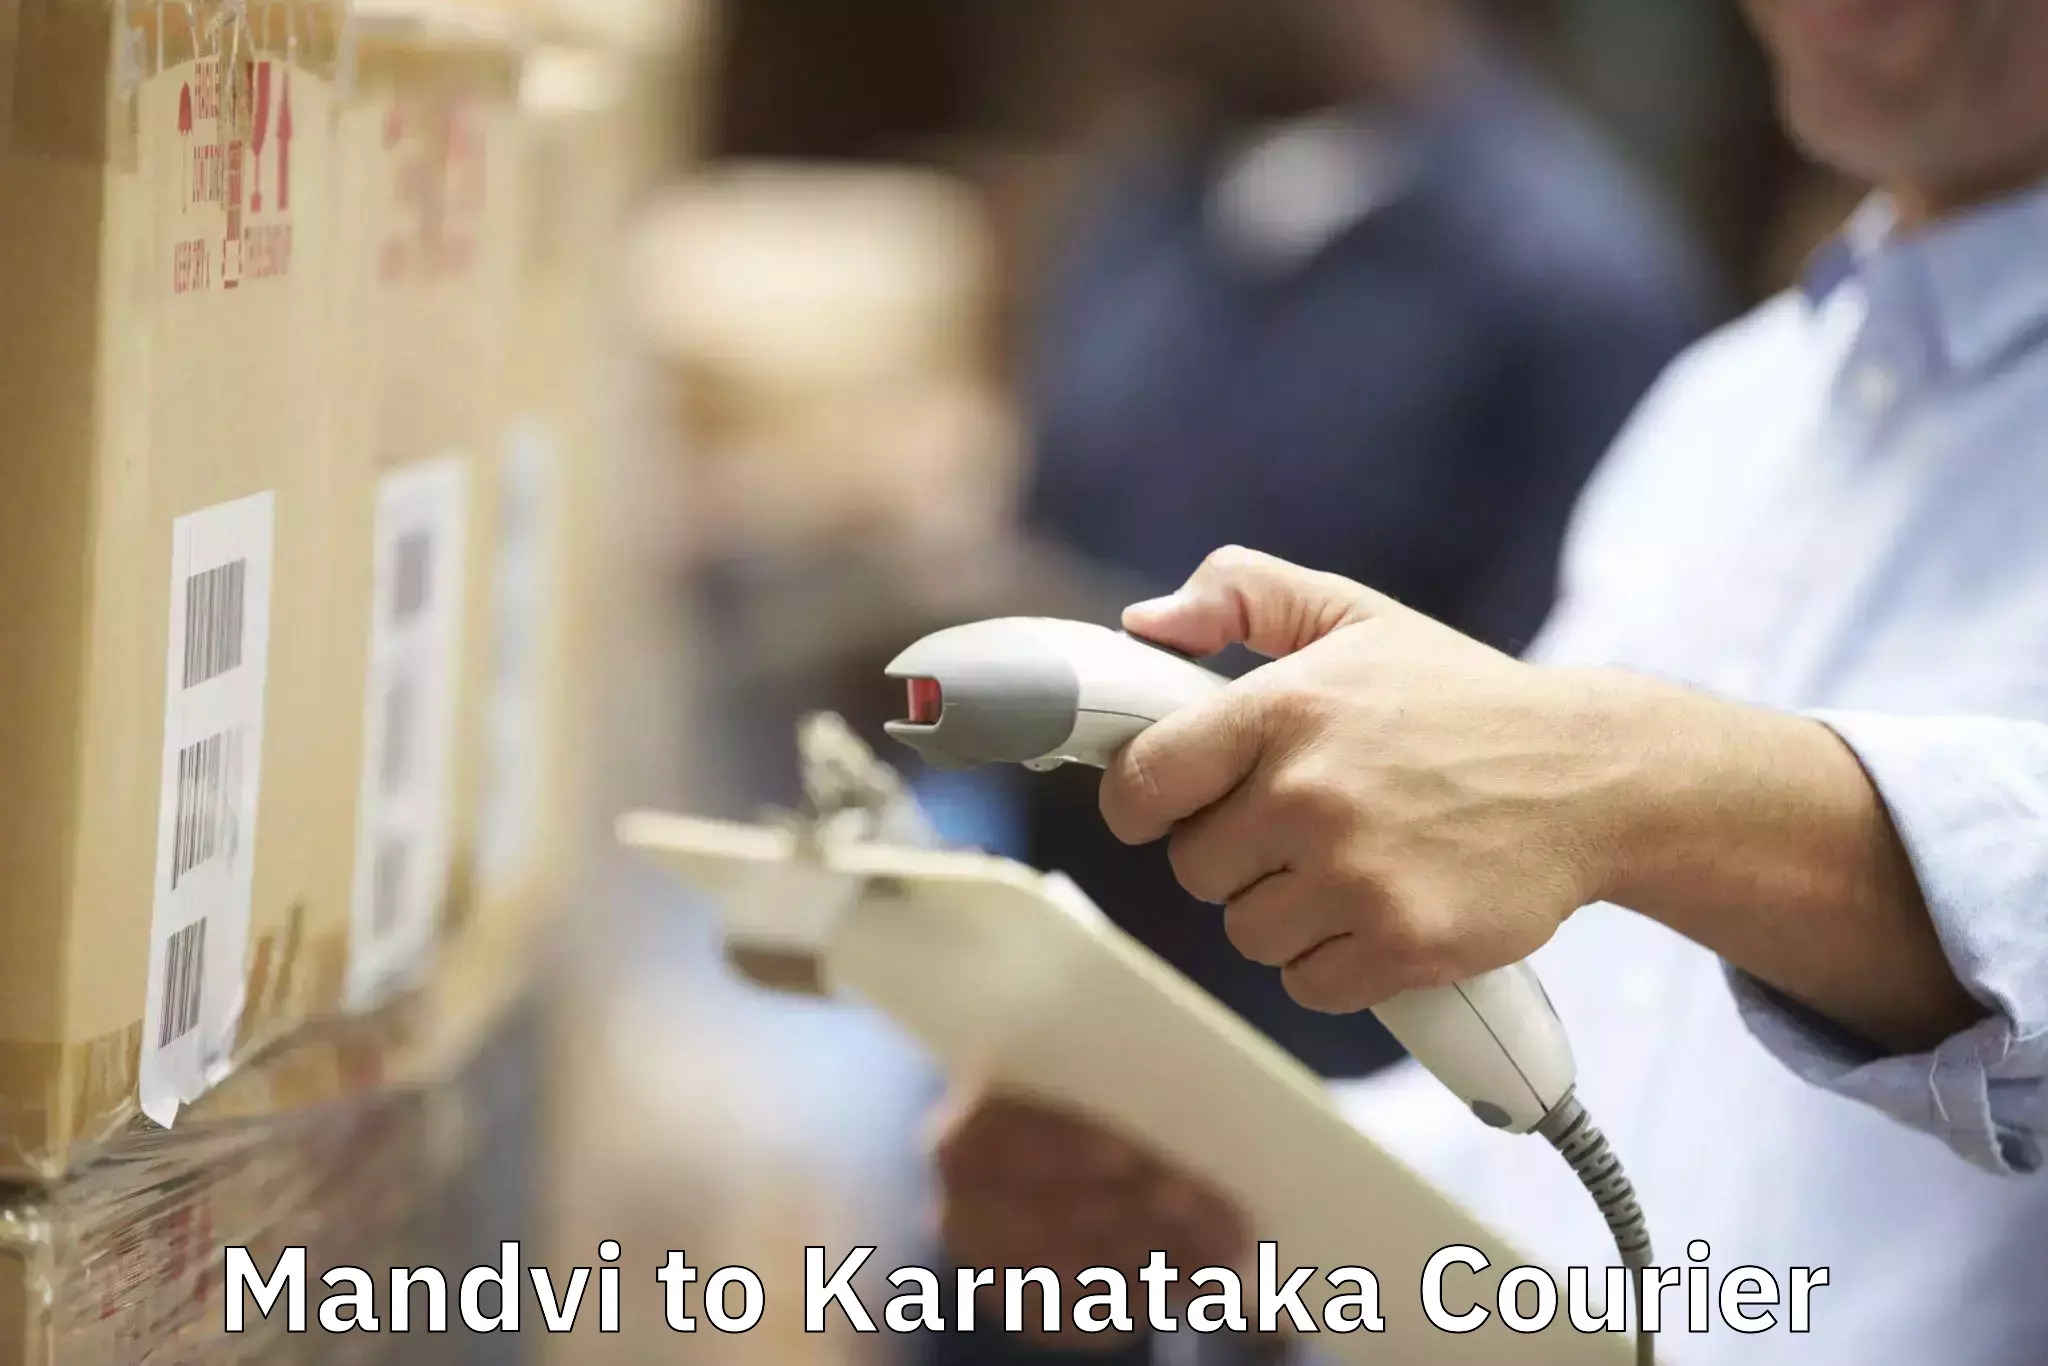 Household moving experts Mandvi to Yenepoya Mangalore